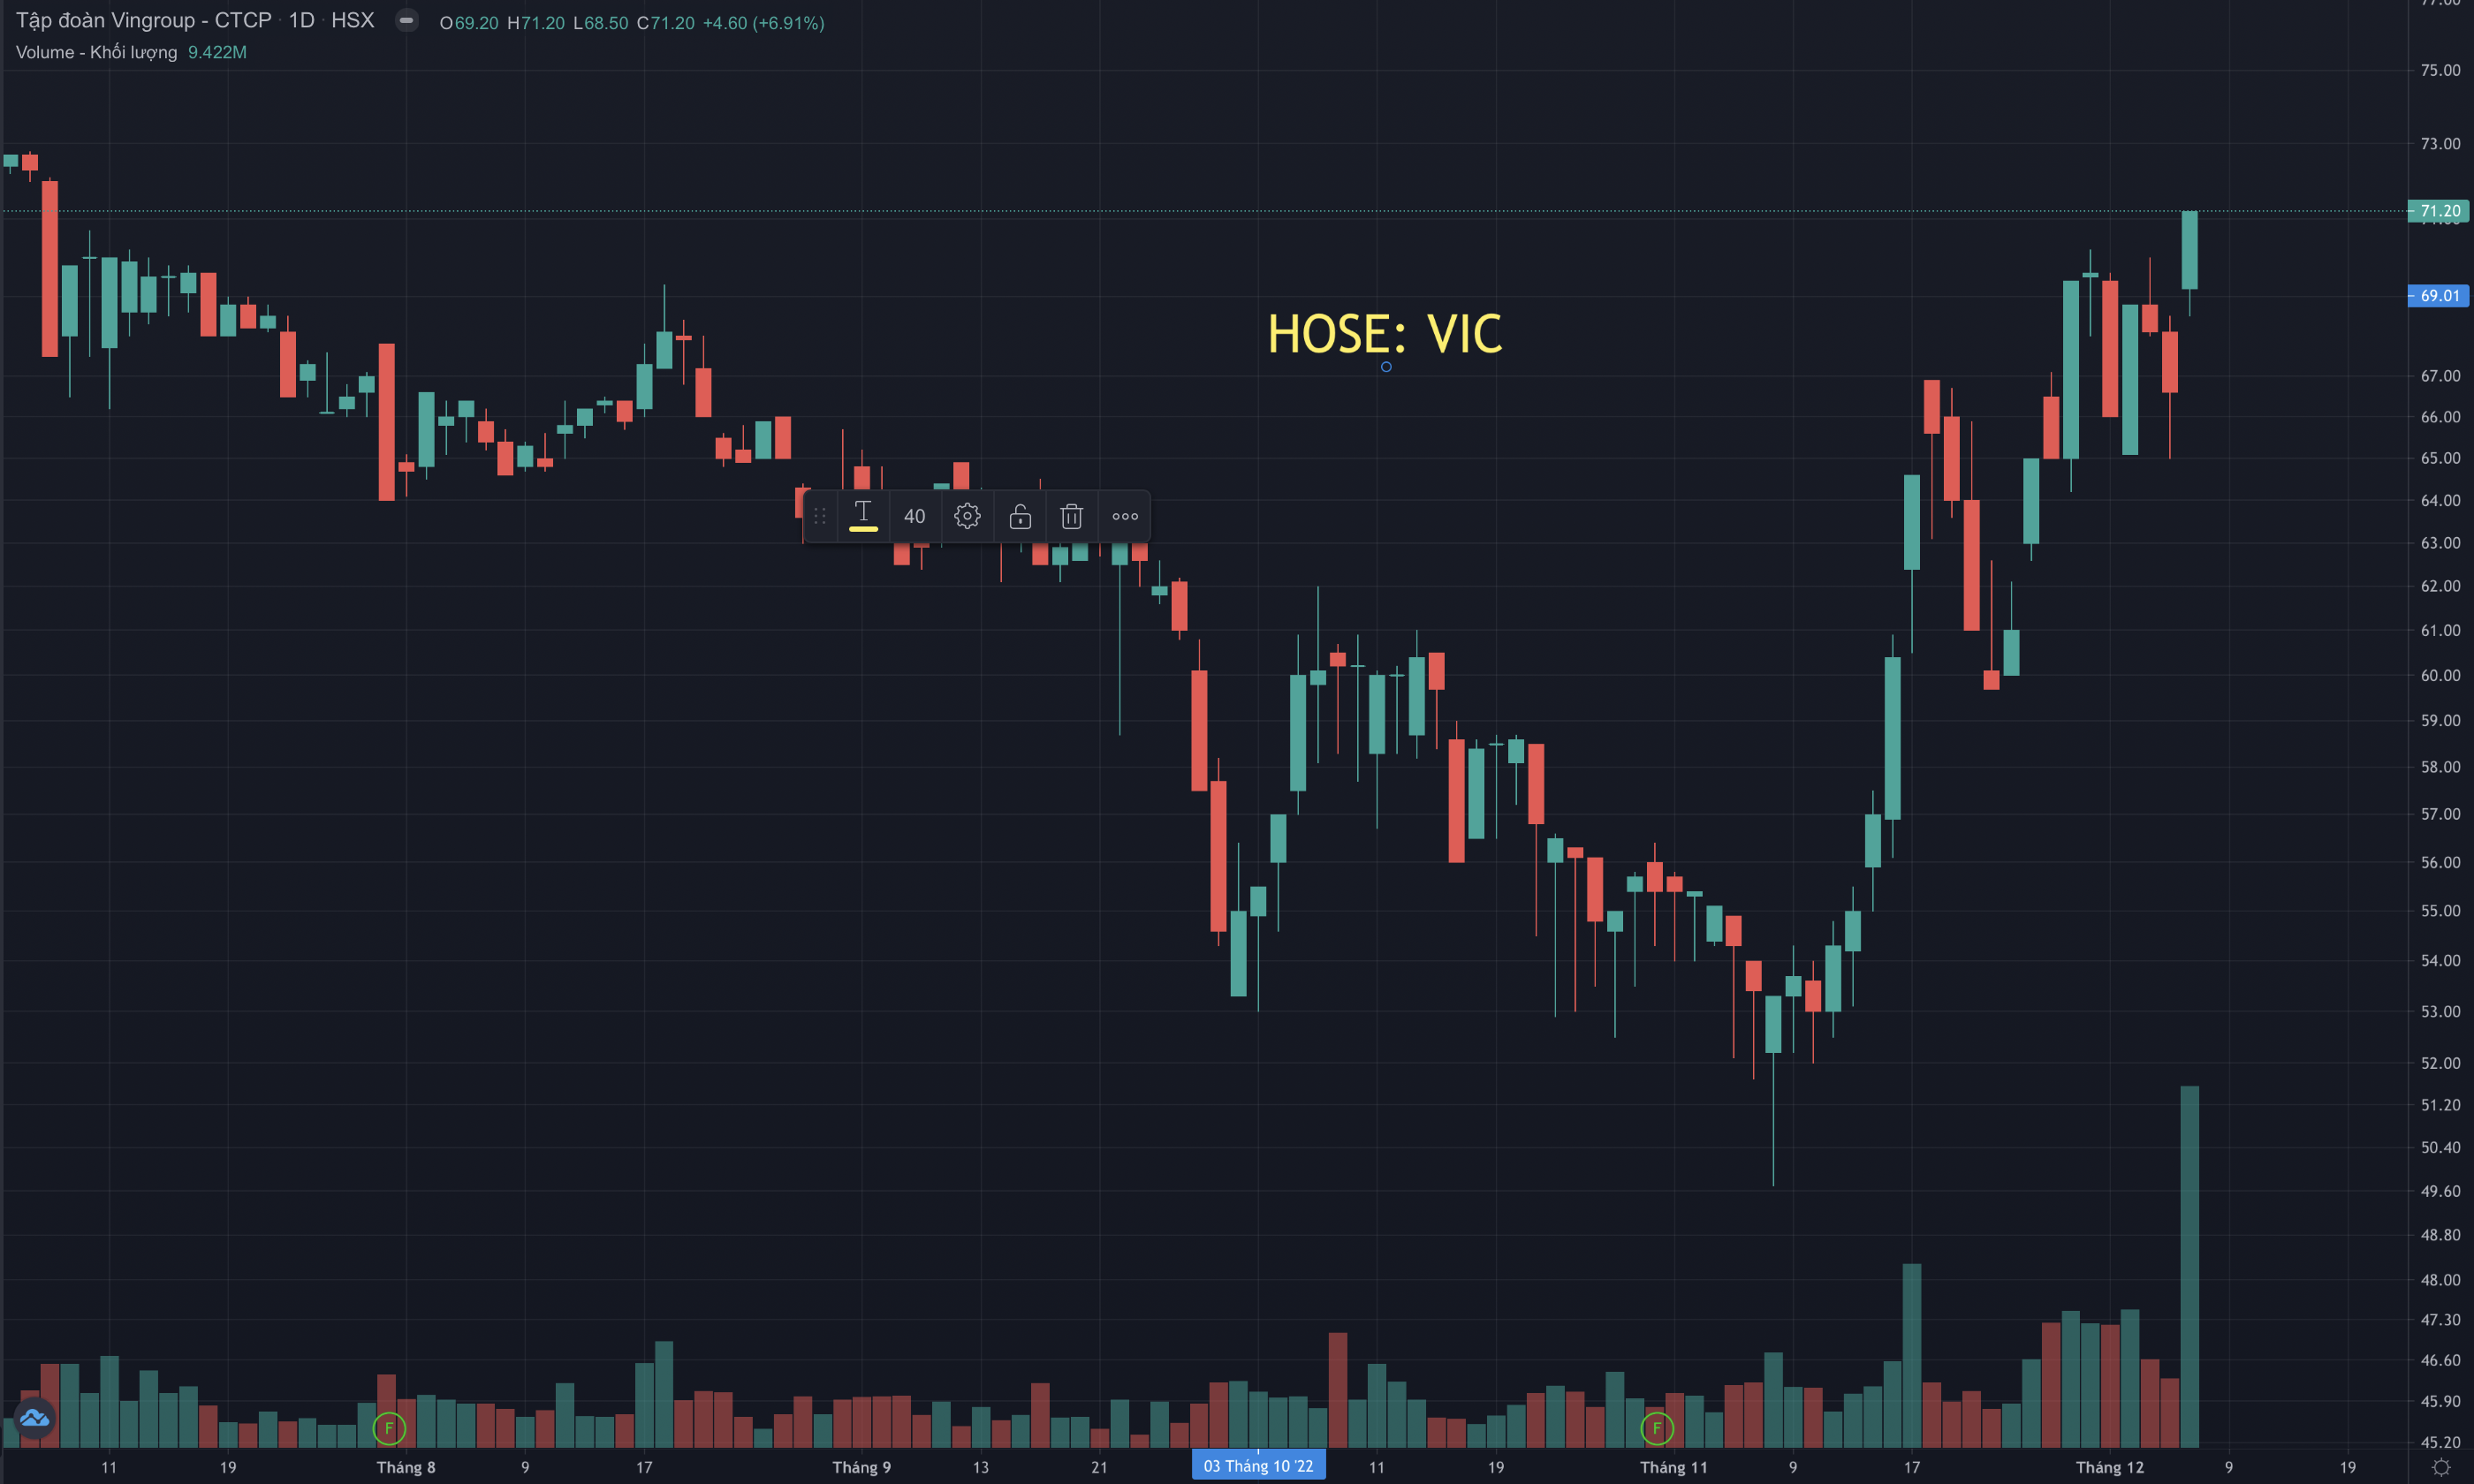 Tính từ đáy dài hạn hồi giữa tháng 11, cổ phiếu VIC đã tăng hơn 34%. Ảnh chụp màn hình